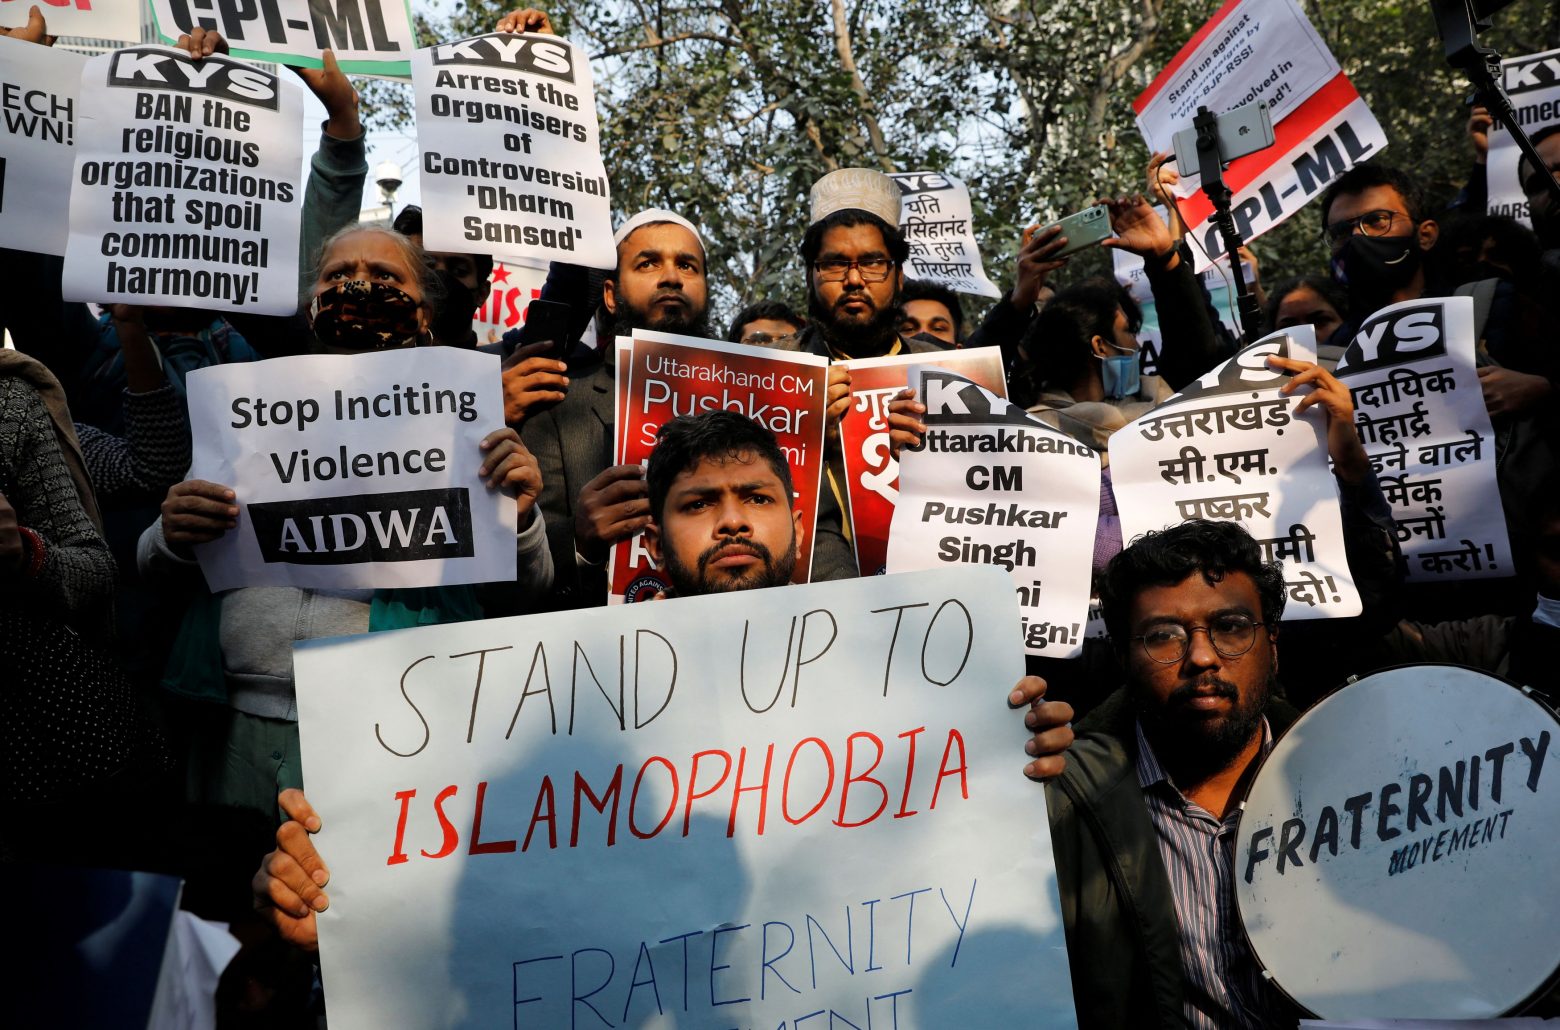 Ινδία: Πώς μια ισλαμοφοβική θεωρία συνωμοσίας οδηγεί τους μουσουλμάνους στον θάνατο